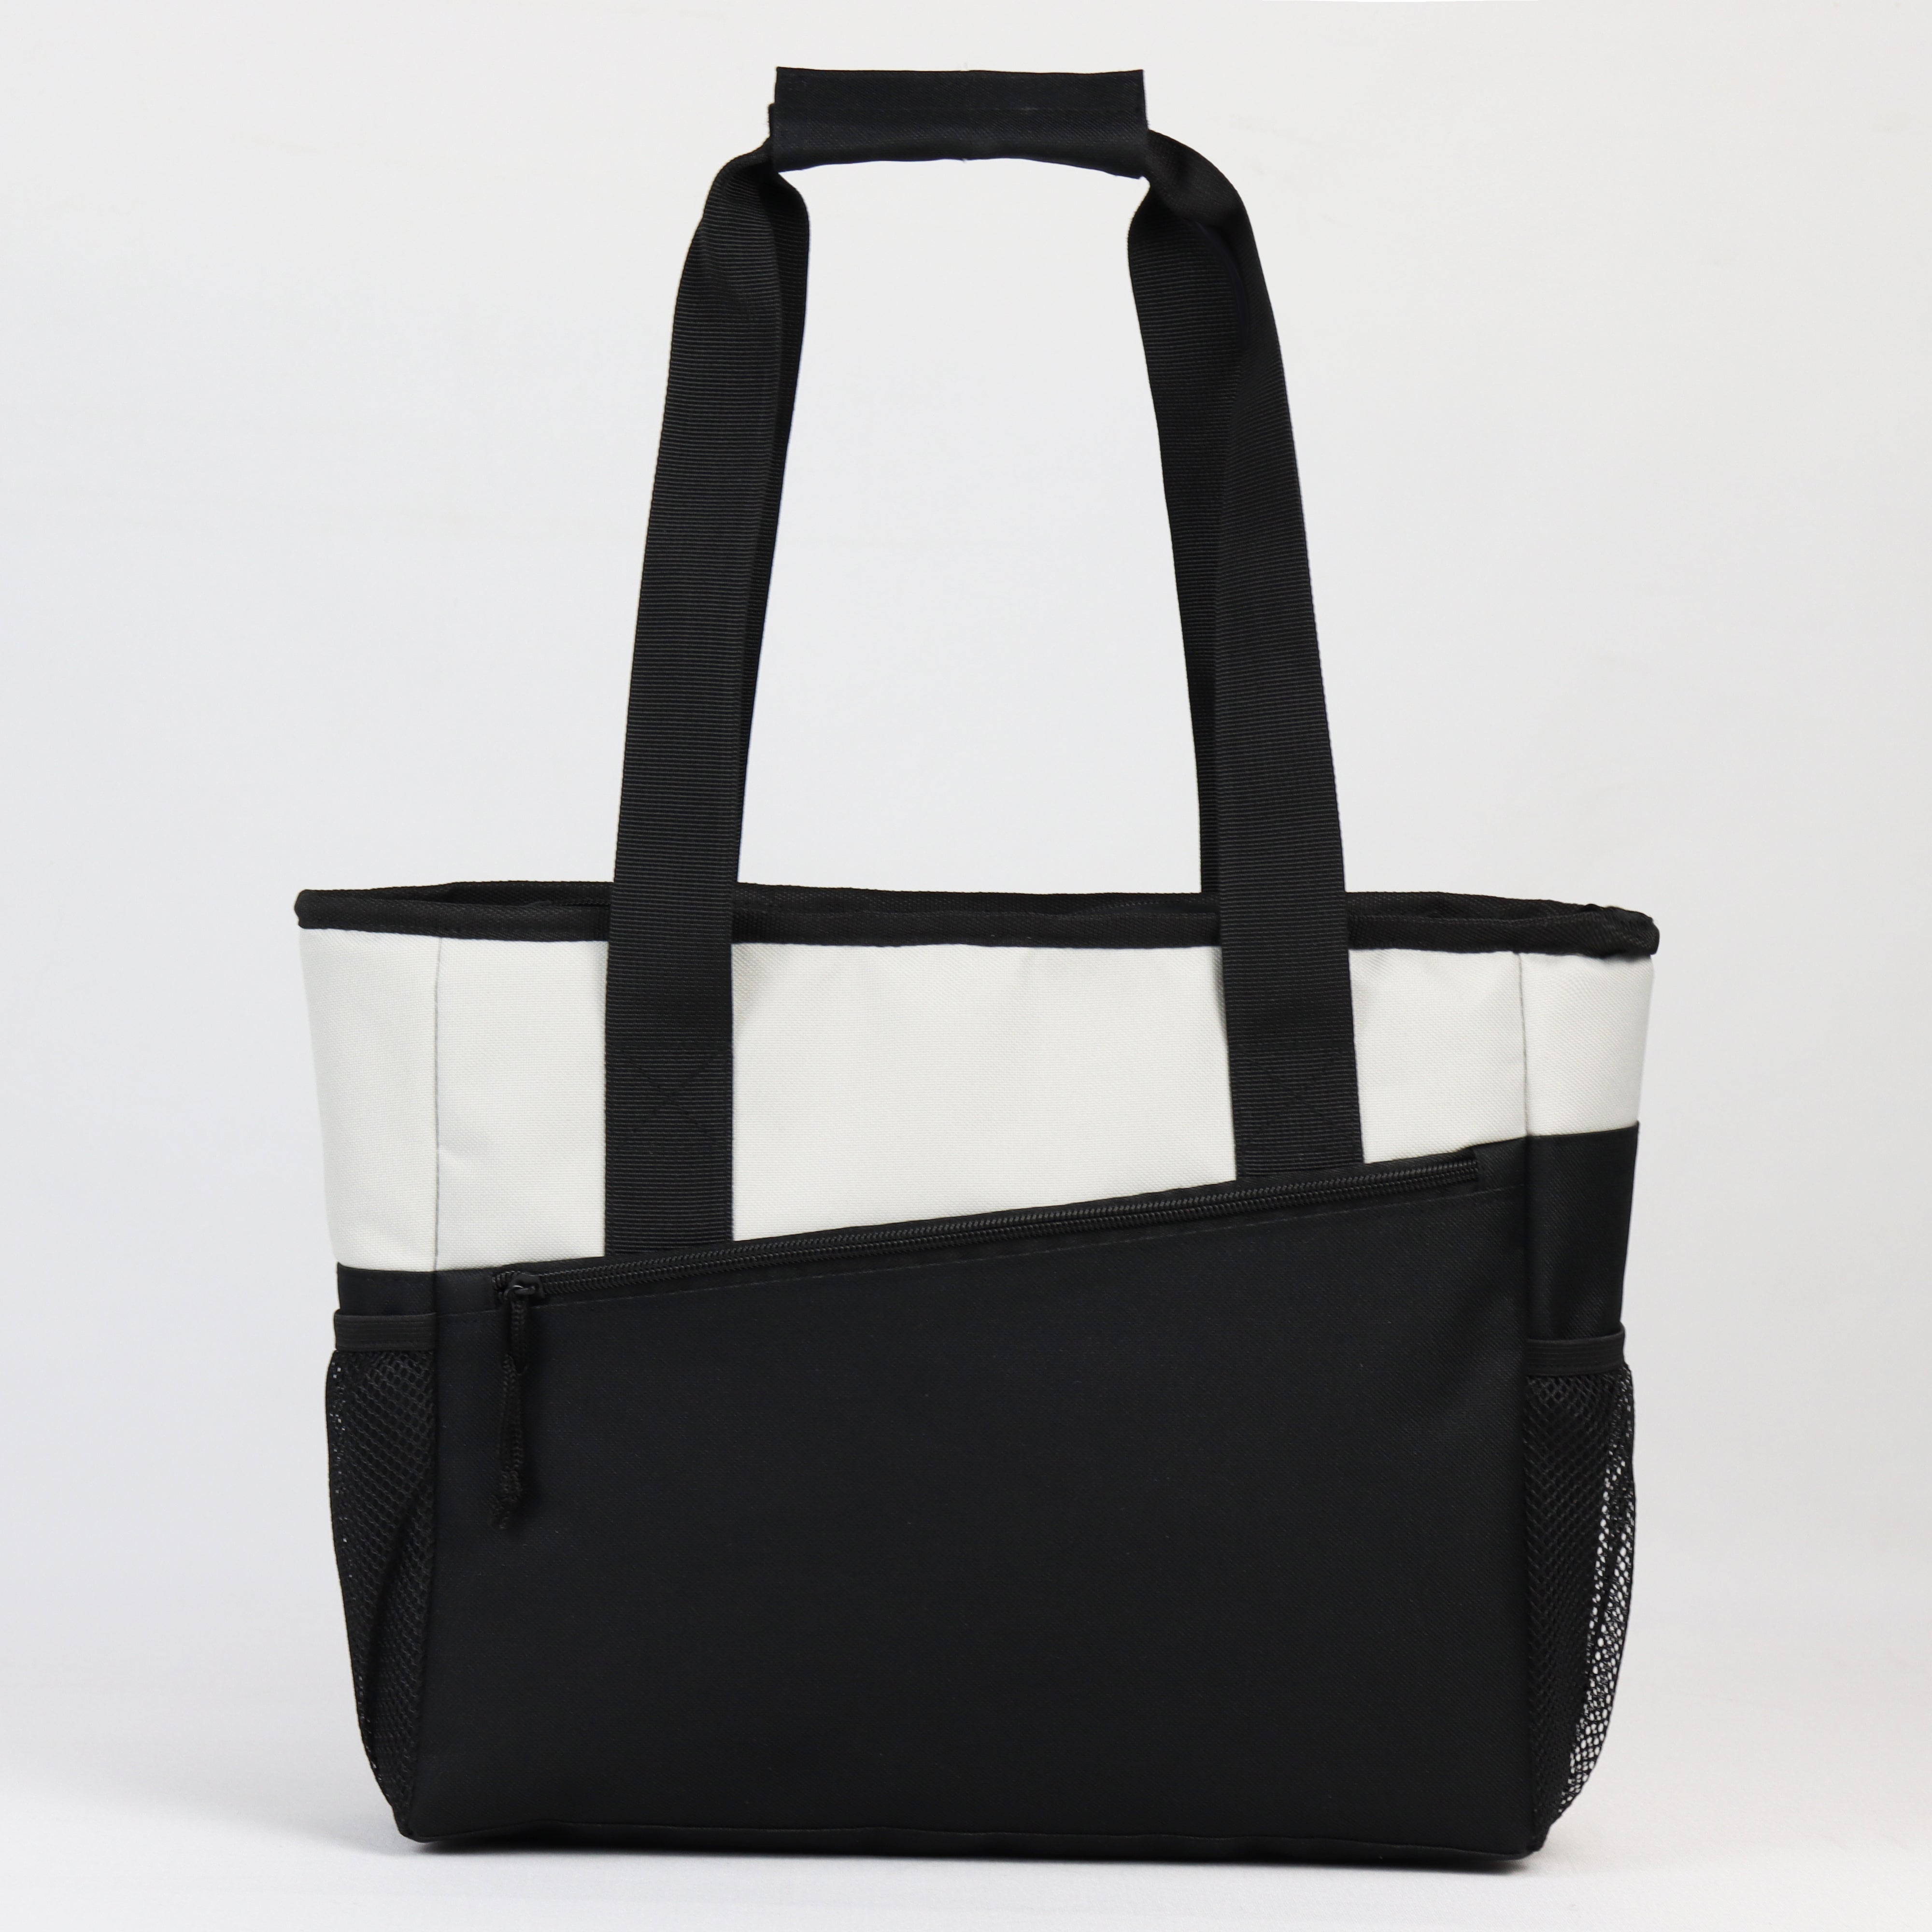 LS-ACB612 - Tote Cooler Bag